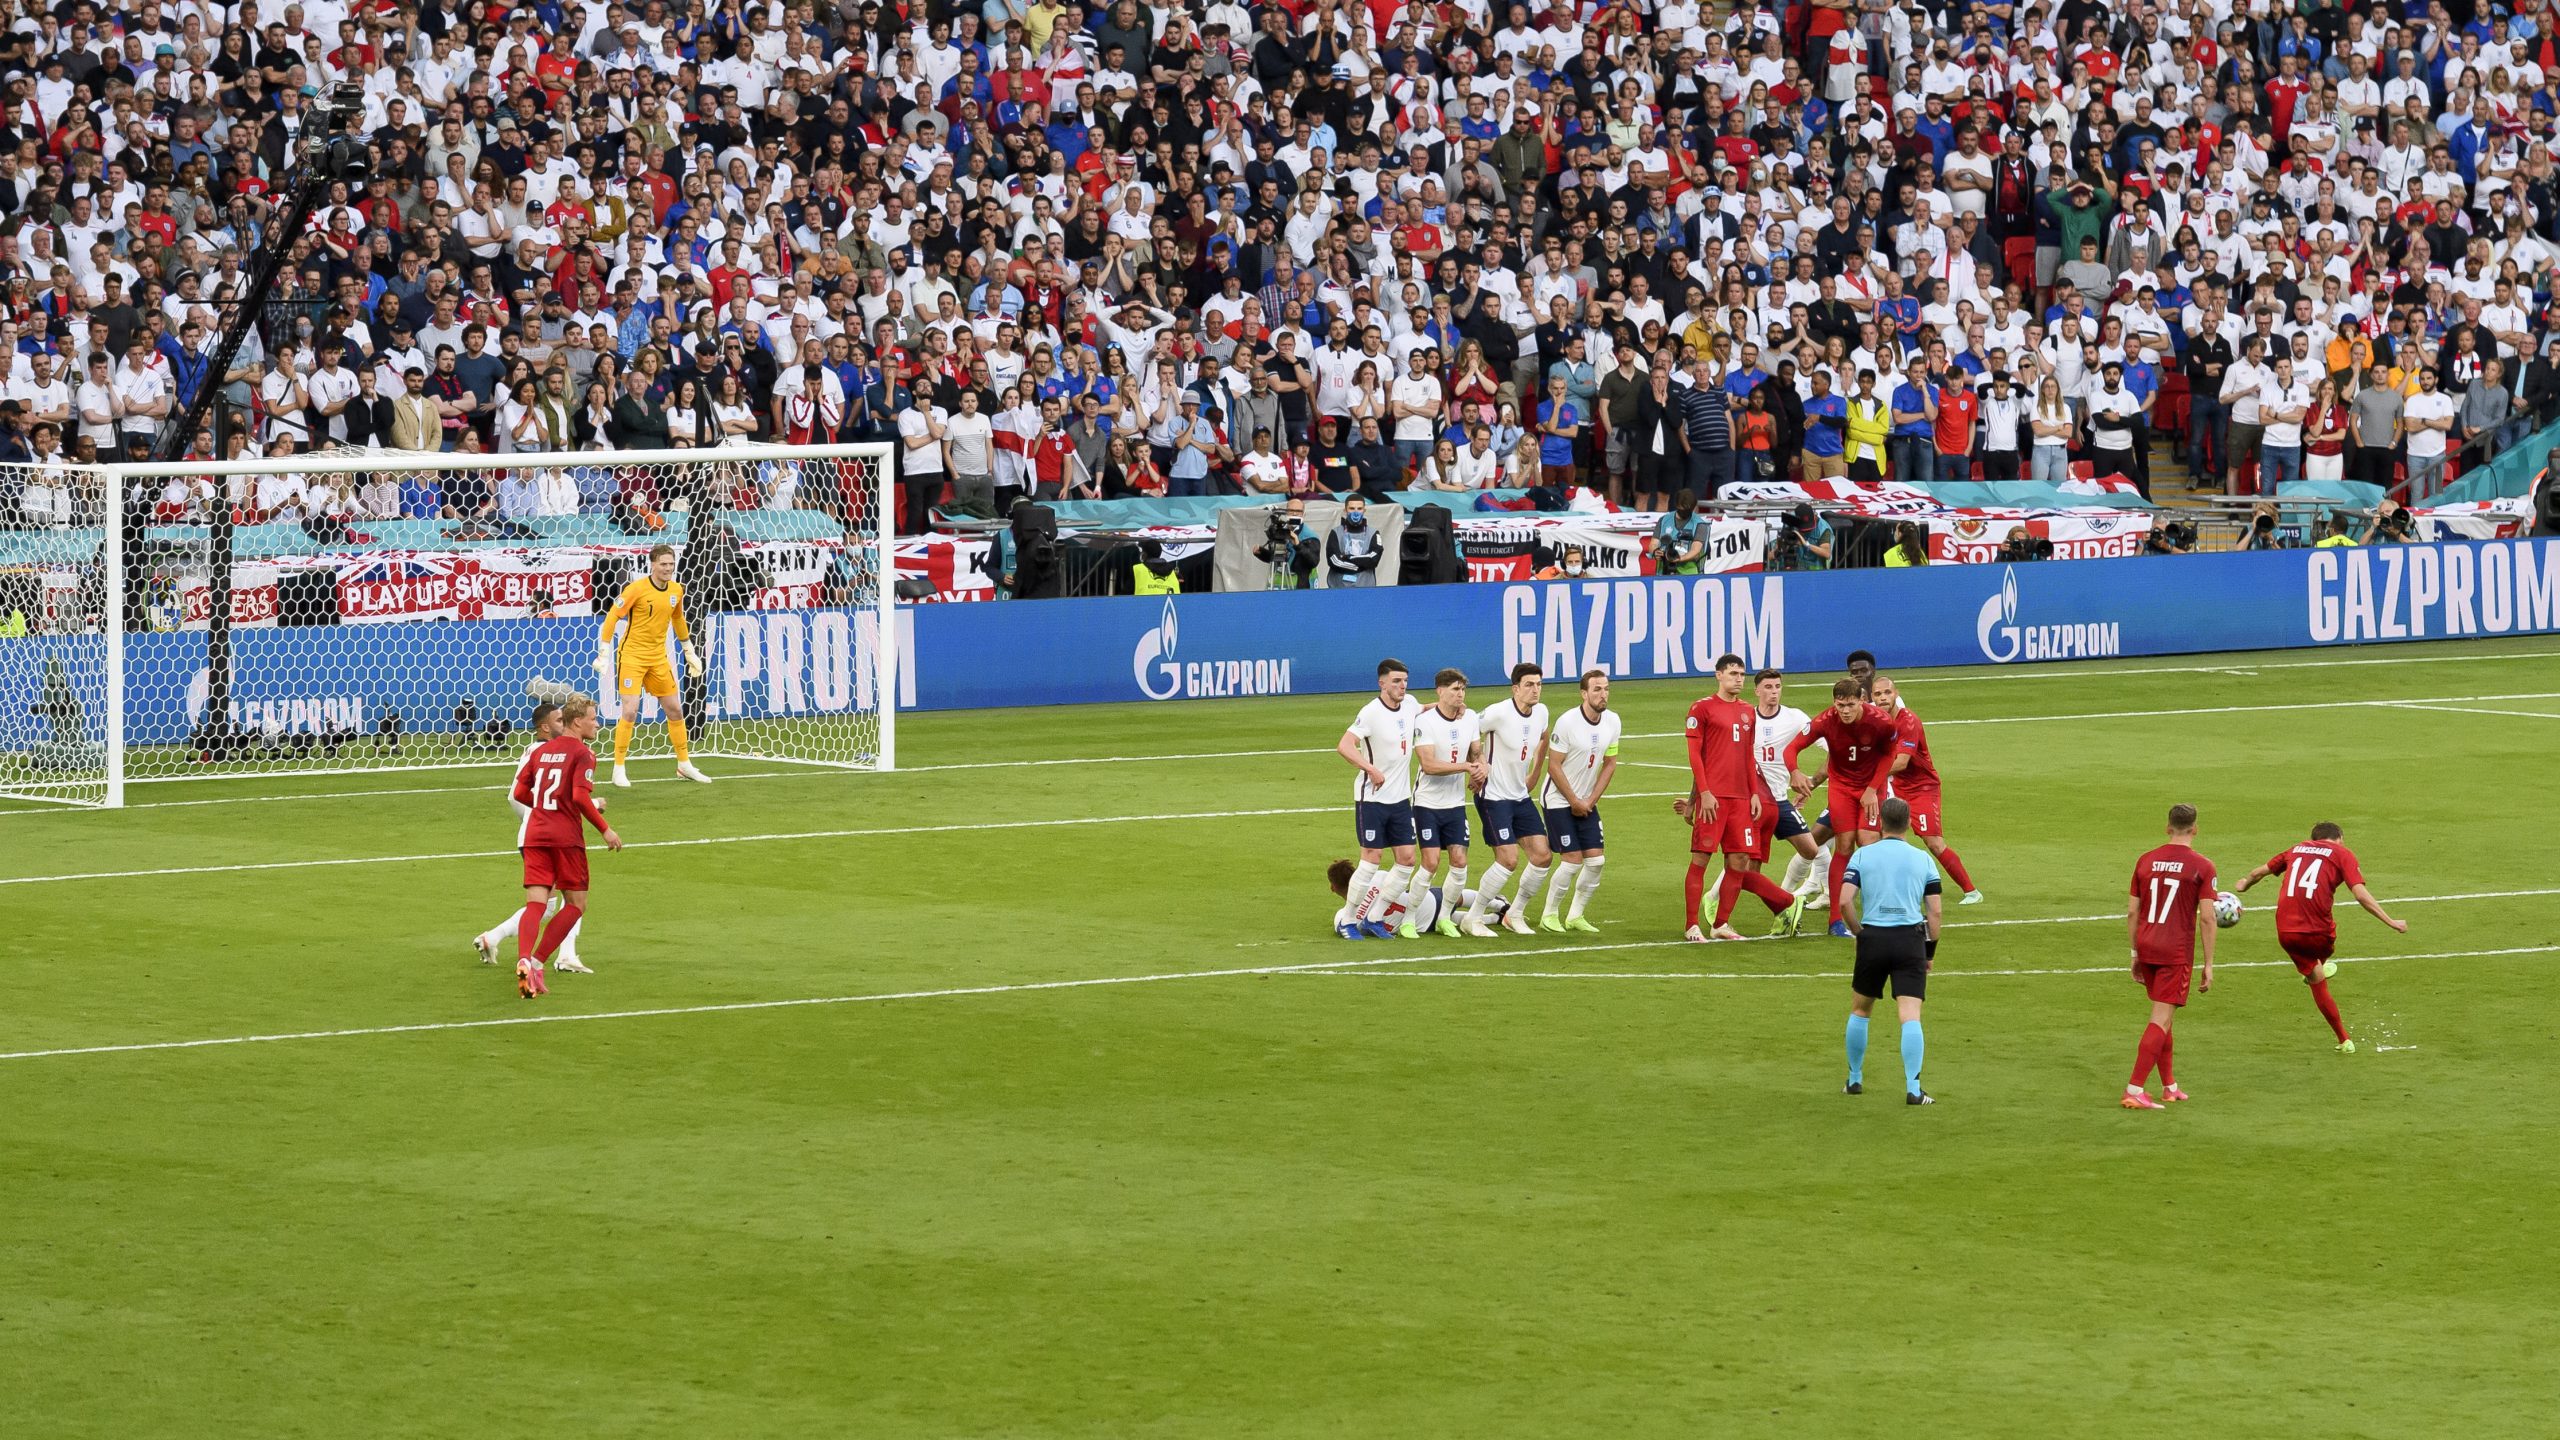 Damsgaard y su gol contra Inglaterra en el Eurocopa 2020